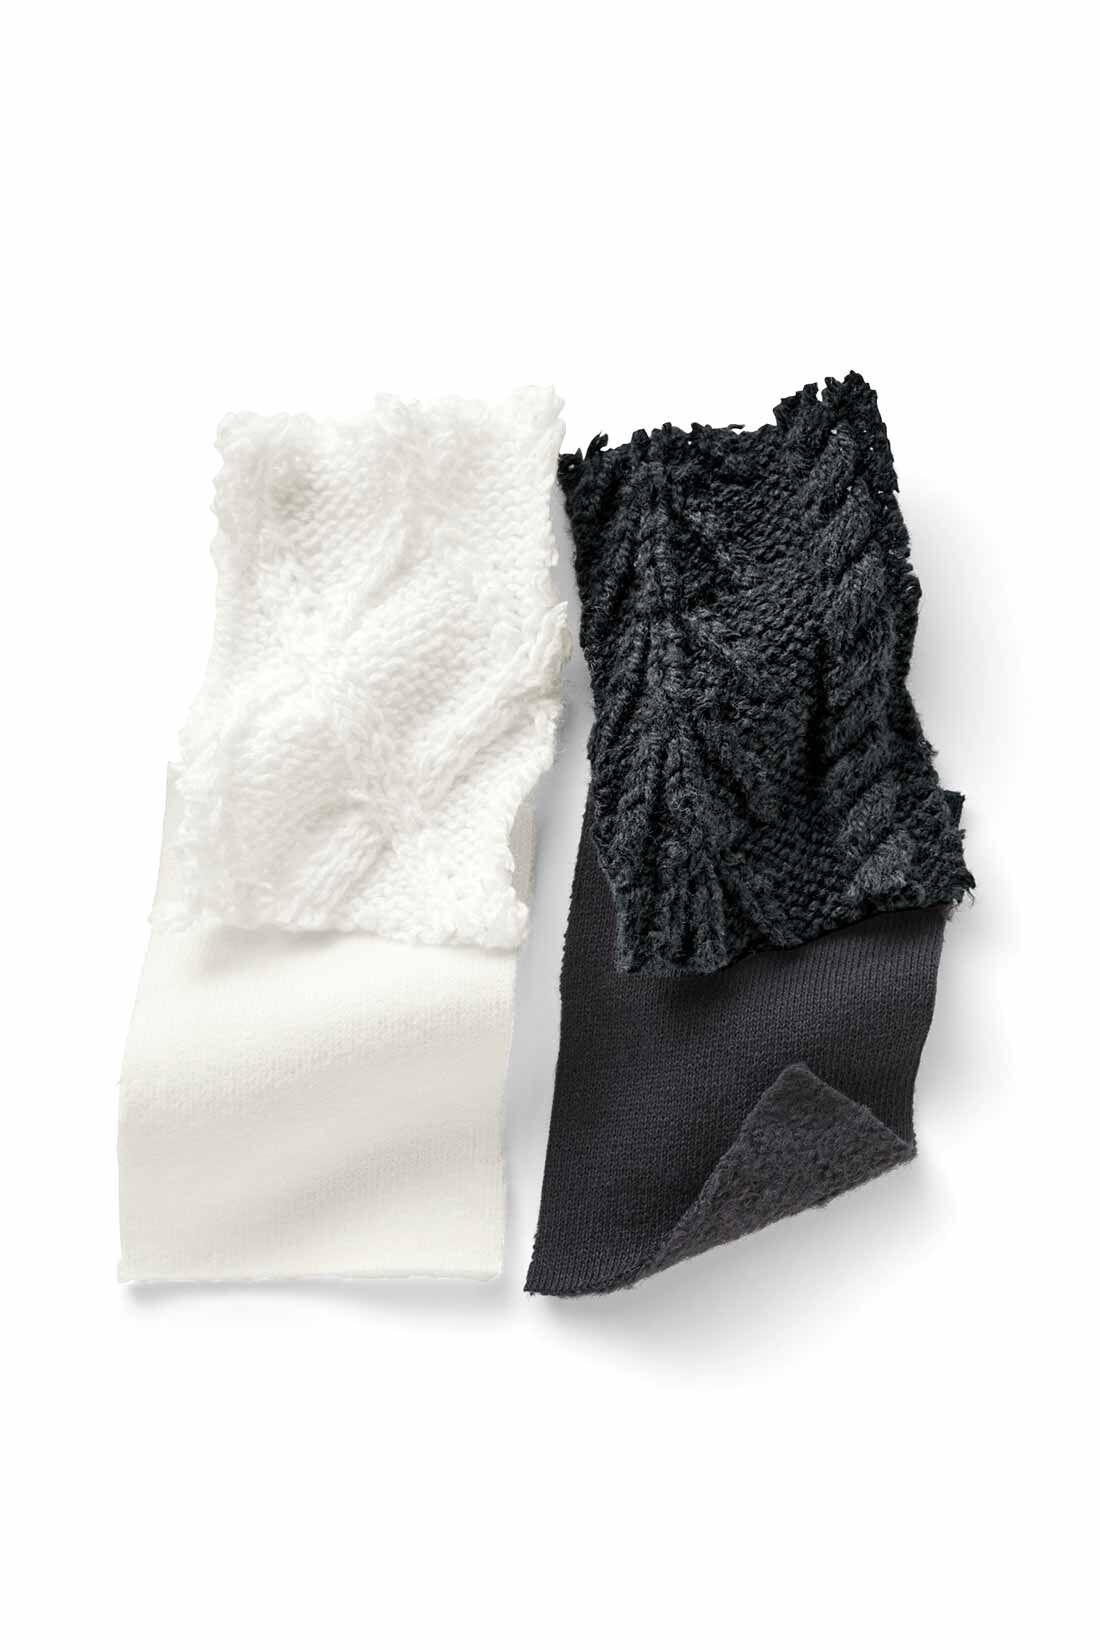 MEDE19F|MEDE19F　オーバーサイズ袖切替えニットスウェット〈ブラック〉|しっかりした綿100％裏起毛素材。アクリル混のケーブルニットとの組み合わせ。